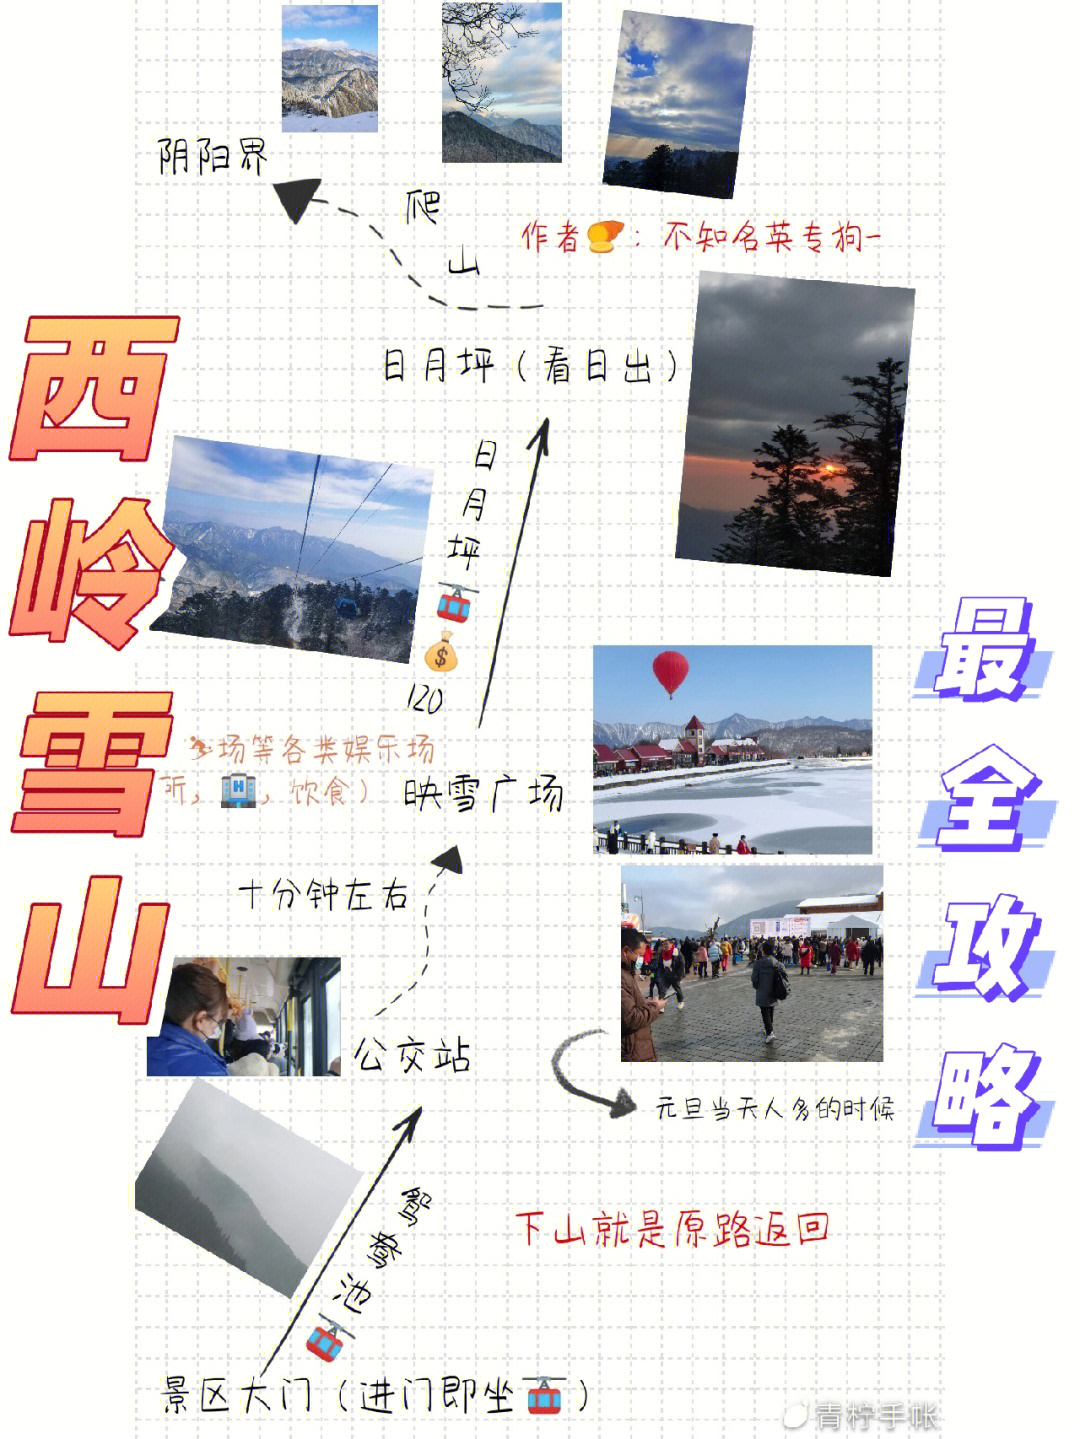 西岭雪山旅游景点介绍图片